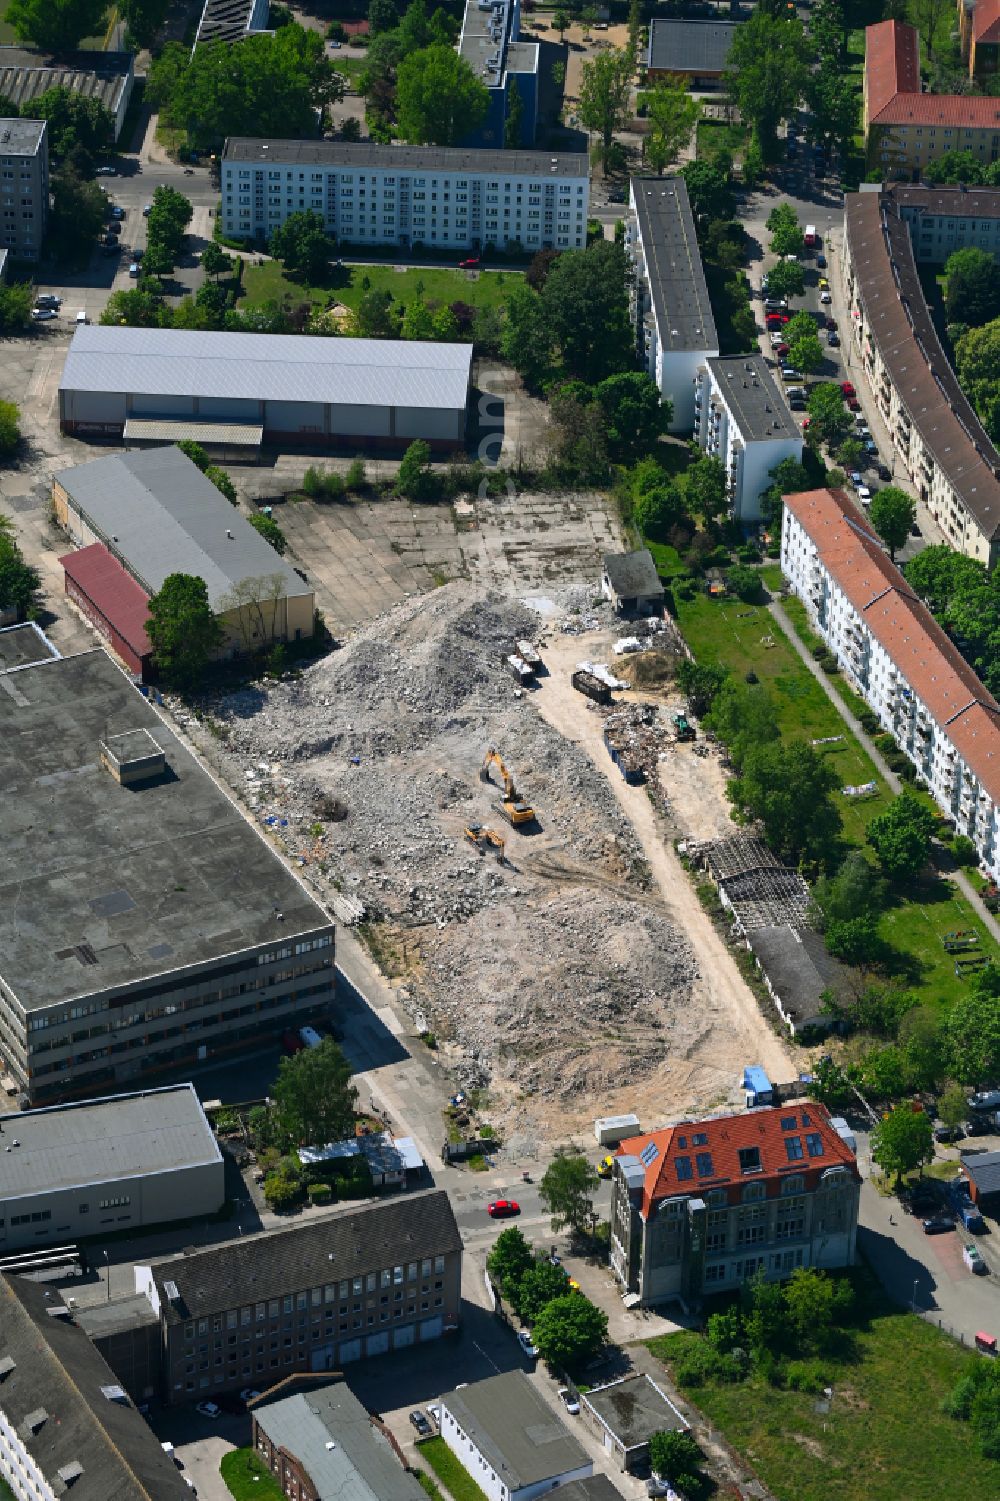 Aerial photograph Berlin - Demolition area and dismantling industrial Estate on street Genslerstrasse - Freienwalder Strasse - Werneuchender Strasse in the district Hohenschoenhausen in Berlin, Germany